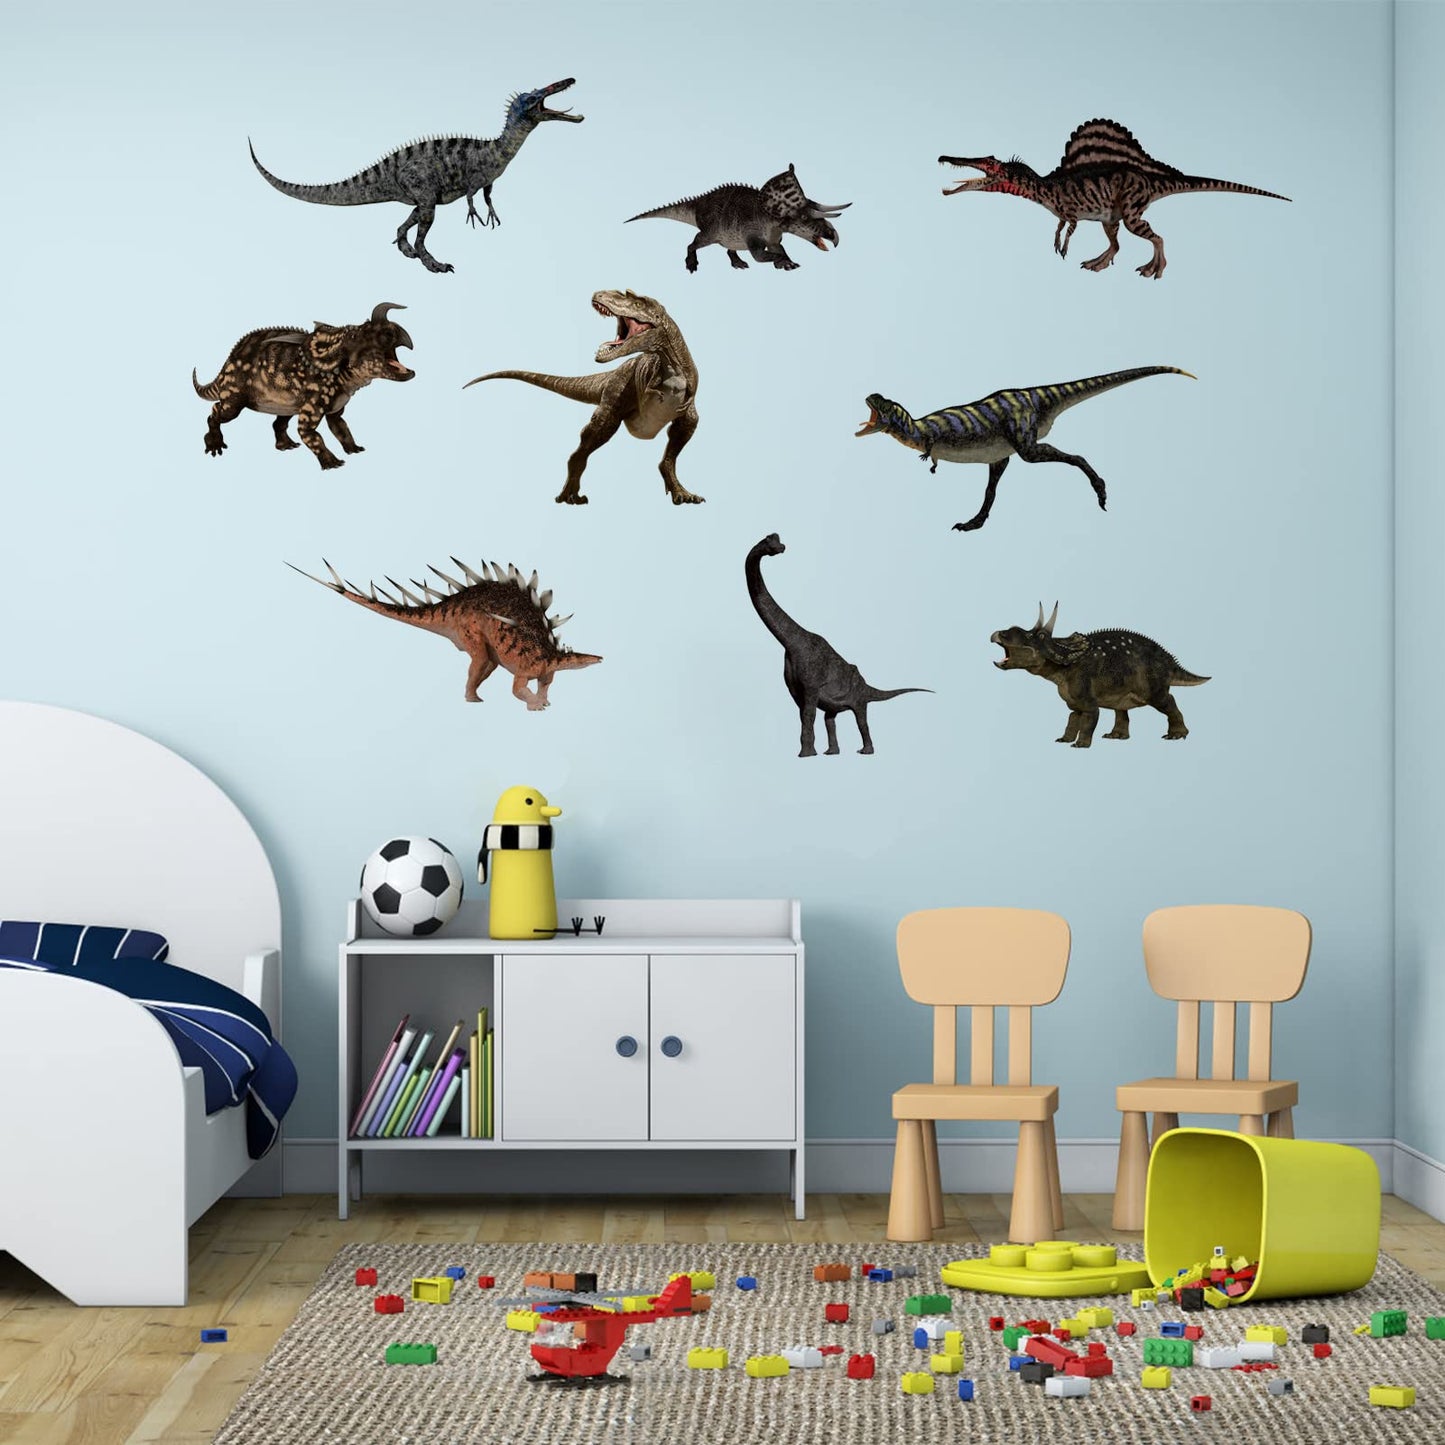 ملصقات جدارية لديناصور لغرف النوم والأولاد ملصقات جدارية لغرف الأطفال ملصقات جدارية ثلاثية الأبعاد تصنعها بنفسك حيوانات دينو عالمية ملصق جداري لغرفة الأطفال وخلفية غرفة المعيشة ديكور جداري قابل للإزالة